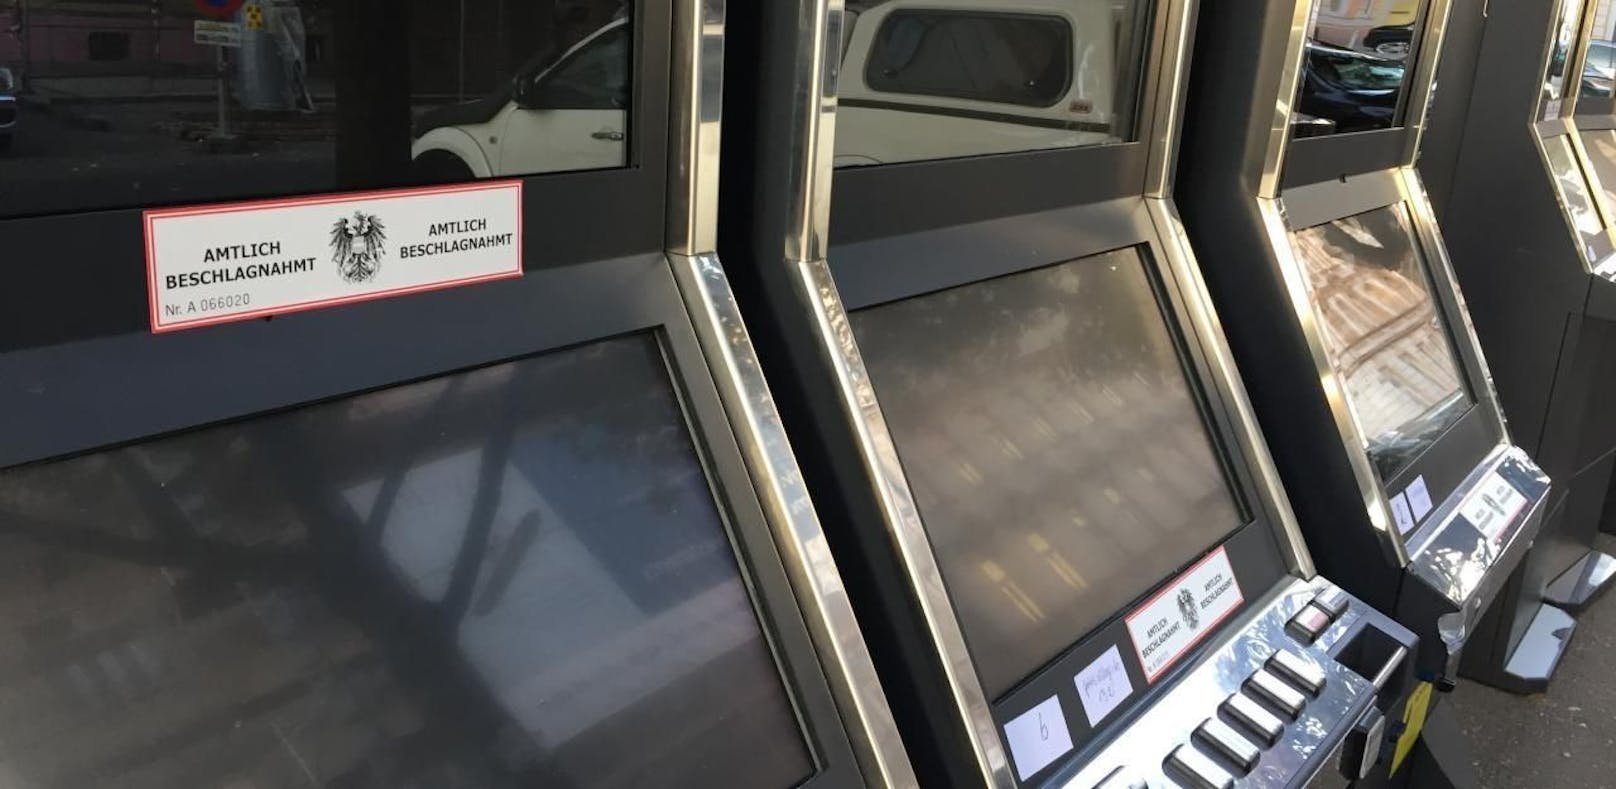 Illegales Glücksspiel: Polizei stellt 6 Automaten si...